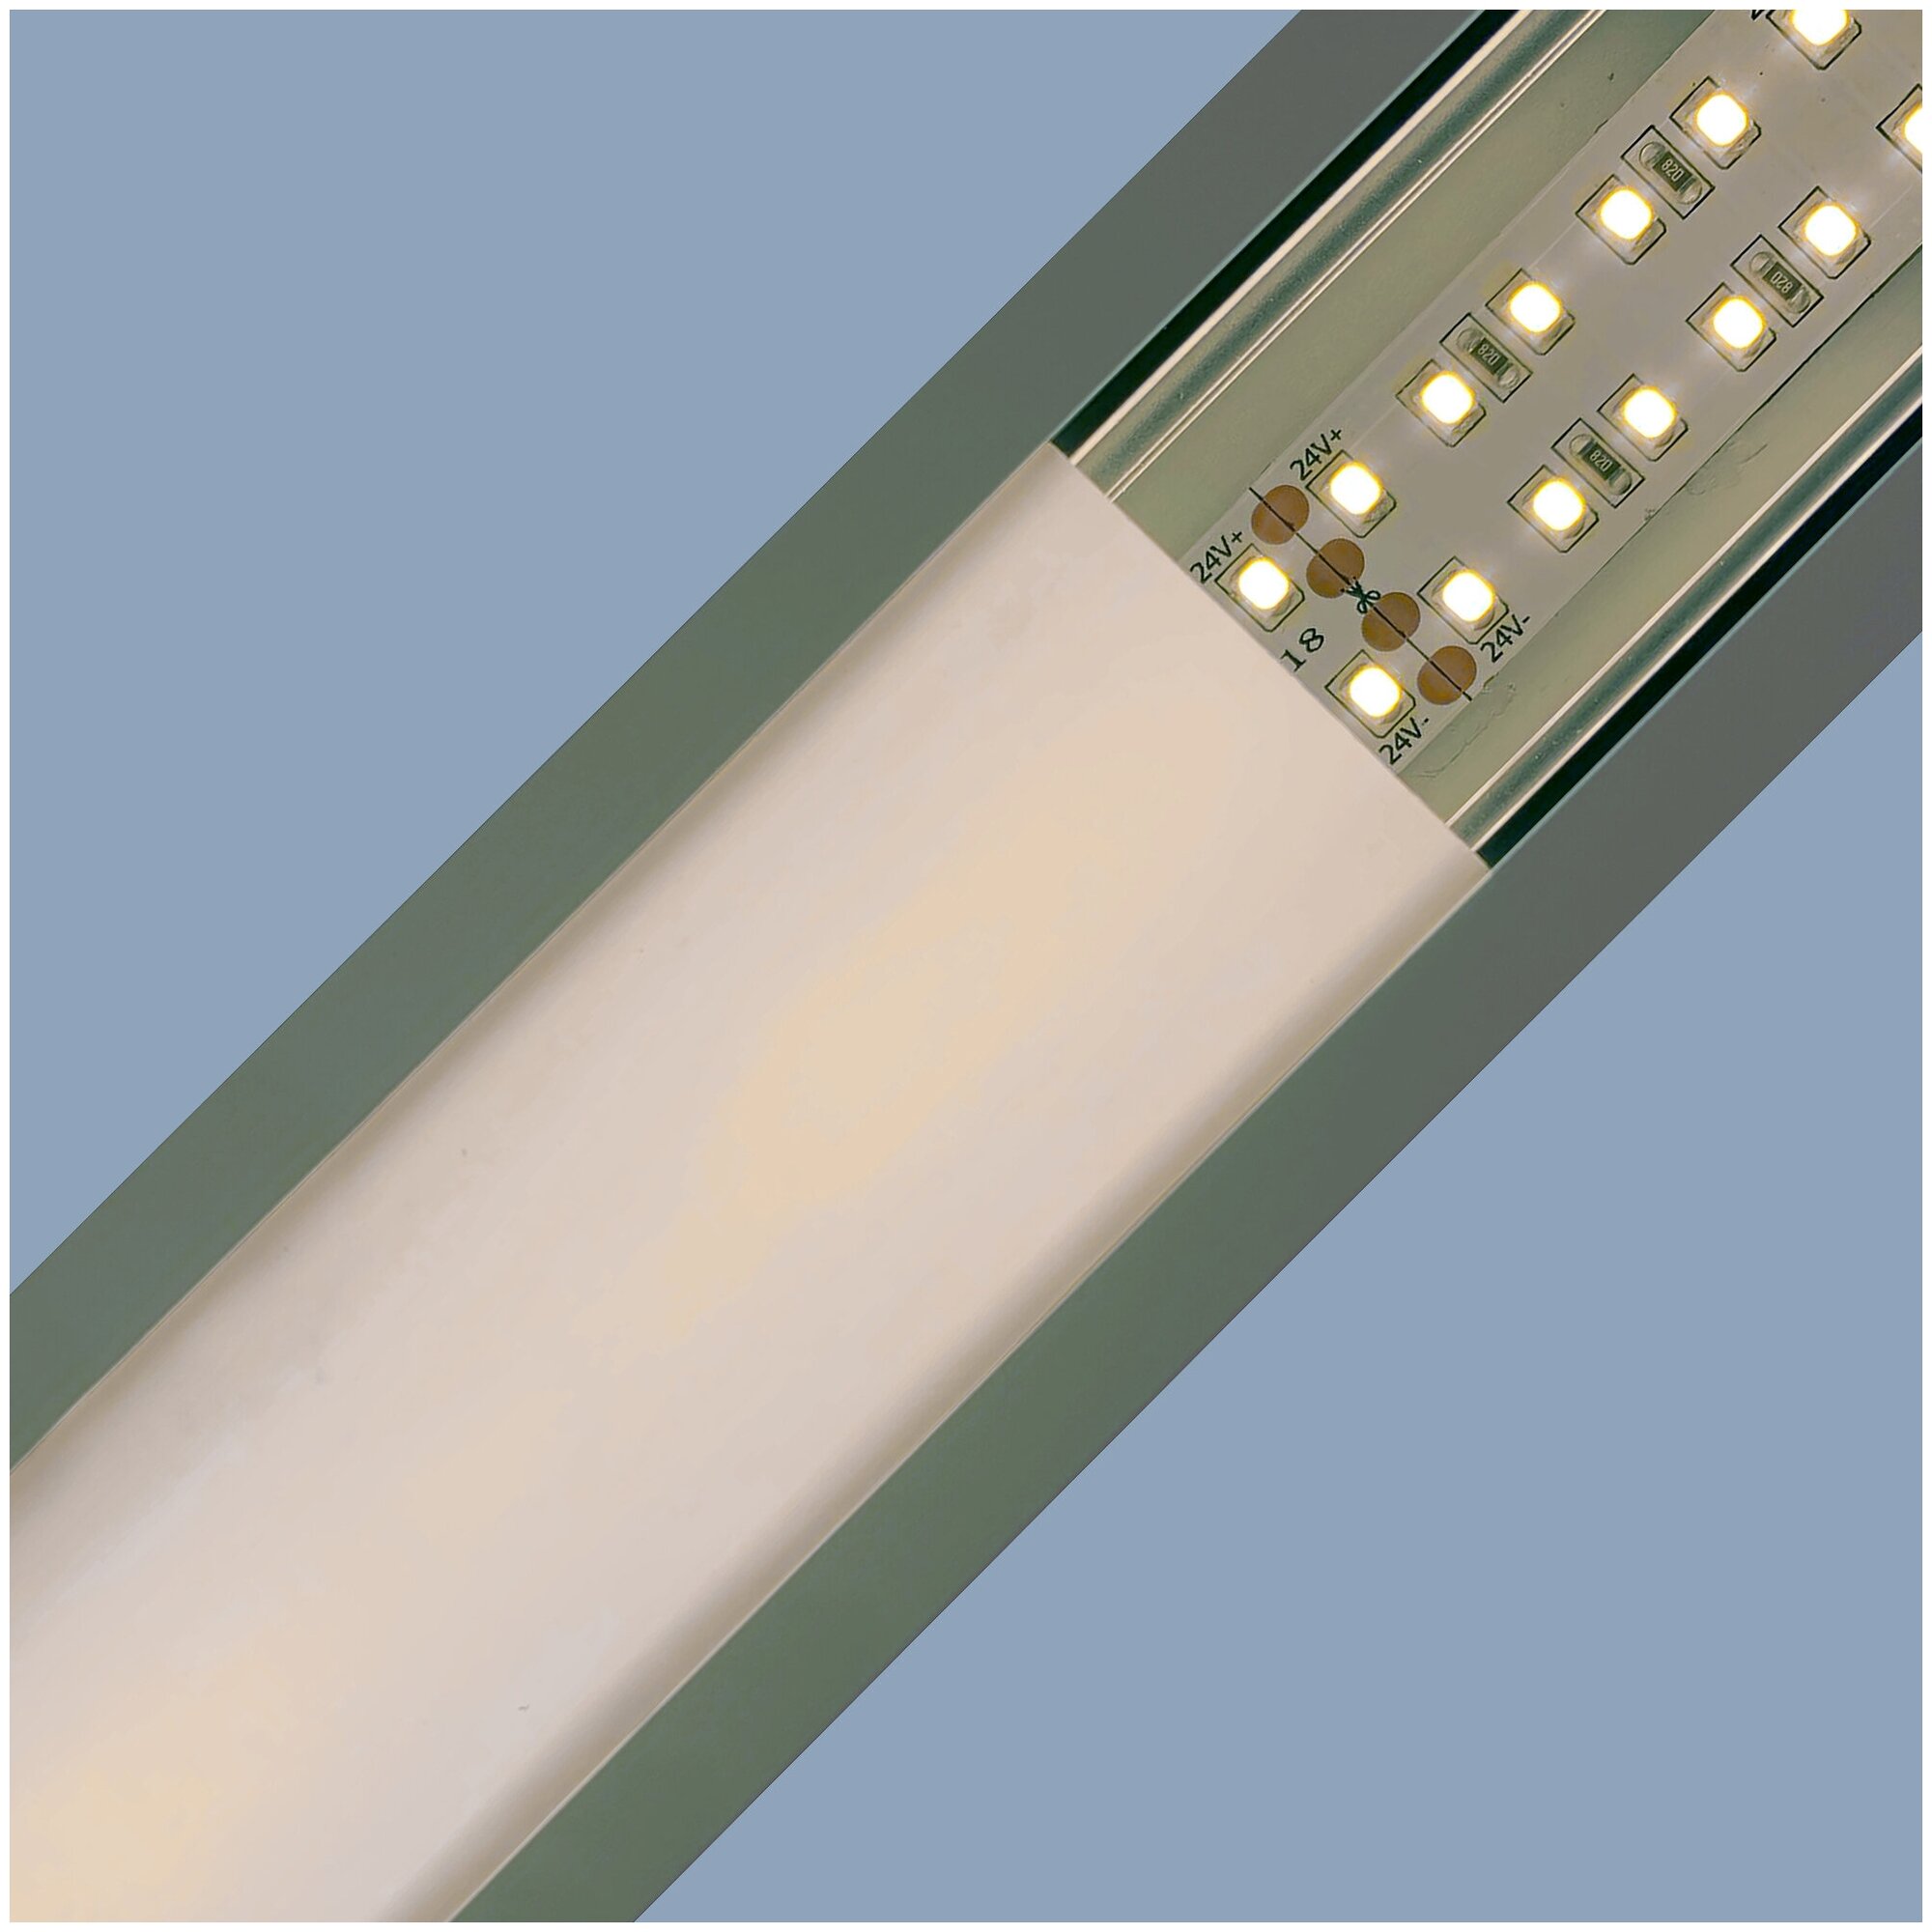 Алюминиевый глубокий профиль для установки светодиодной ленты с матовым белым рассеивателем / Профиль для врезного монтажа LED ленты шириной до 12 мм / серебро / 1000х16х12 мм / IP44 / 2 заглушки /08-09